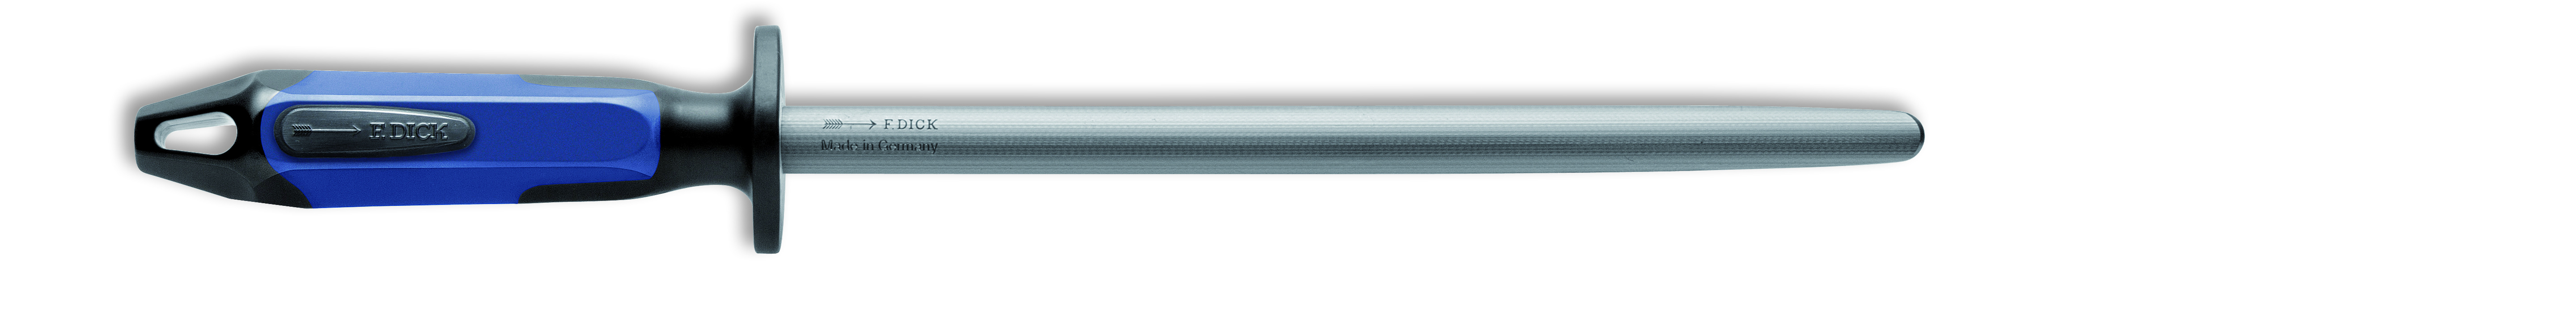 Ocílka FineCut oválná, v délce 25 cm, modro/černá